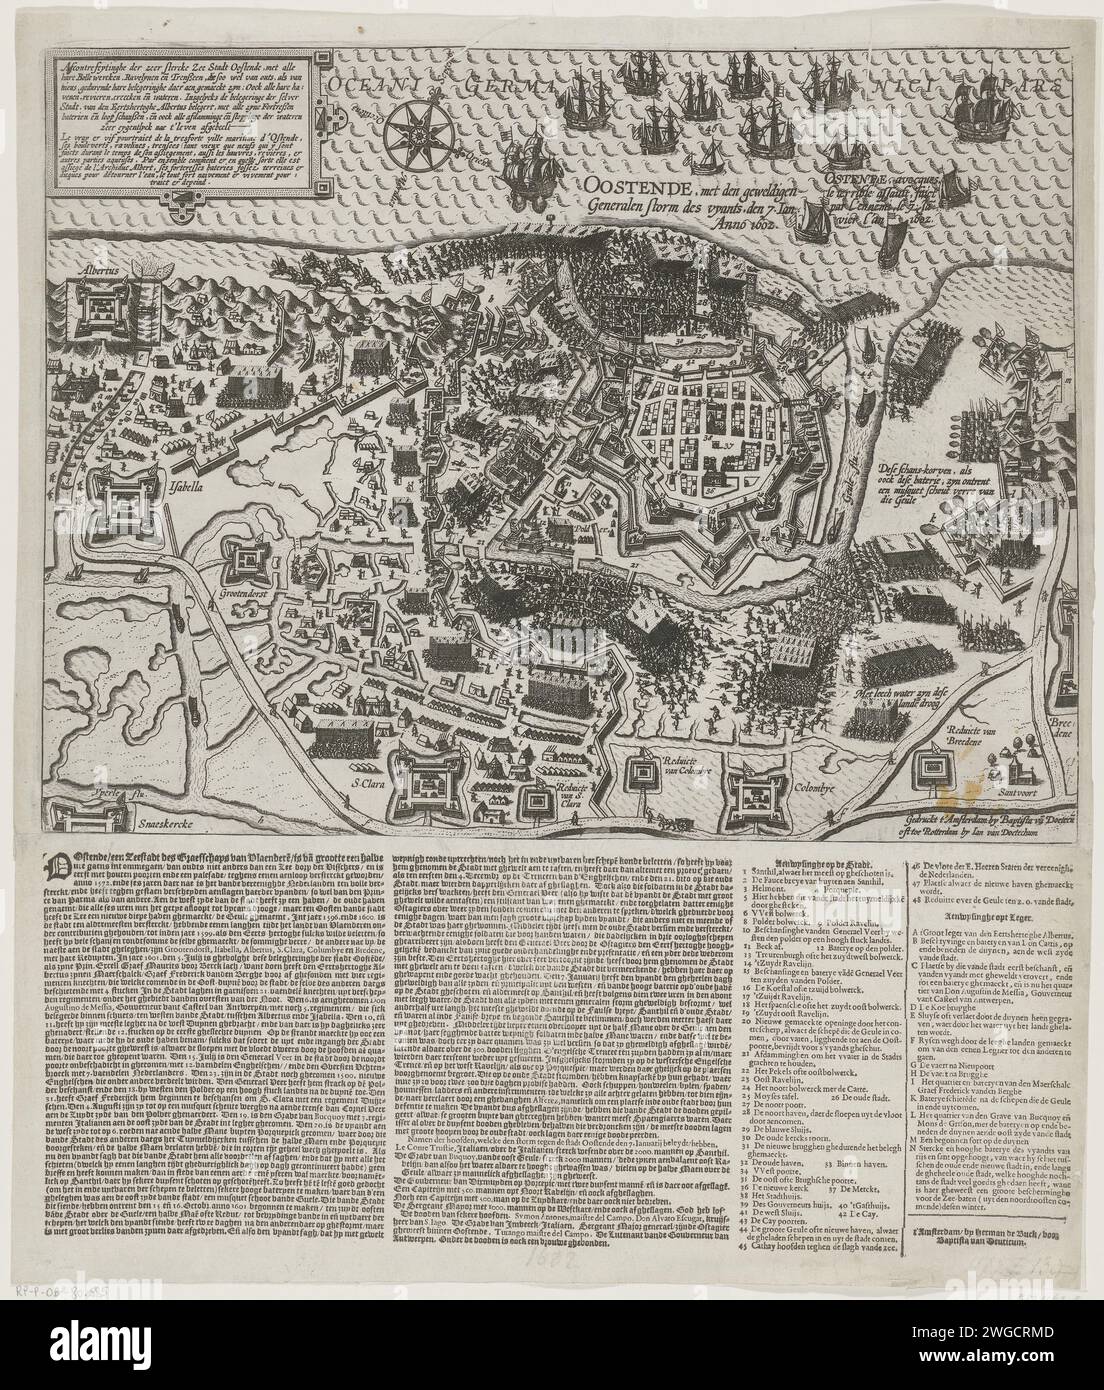 Prise d'Ostende, 1602, 1602 print prise d'Ostende par l'armée espagnole le 7 janvier 1602. Siège d'Ostende sous Albertus et plus tard sous Spinola de 1601 à 1604. Plan de la ville avec le pays environnant avec toutes les défenses et les camps de l'armée des assiégeants. Avec des combats autour de la ville et l'attaque des assiégeants le 7 janvier 1602. En haut à gauche un cartouche avec des titres en néerlandais et en français. Au bas de l'impression, une feuille de texte imprimée séparément est collée avec une description des événements et les légendes 1-48 et A-N en néerlandais. Imprimeur : Northern Netherlandsprinter : Amst Banque D'Images